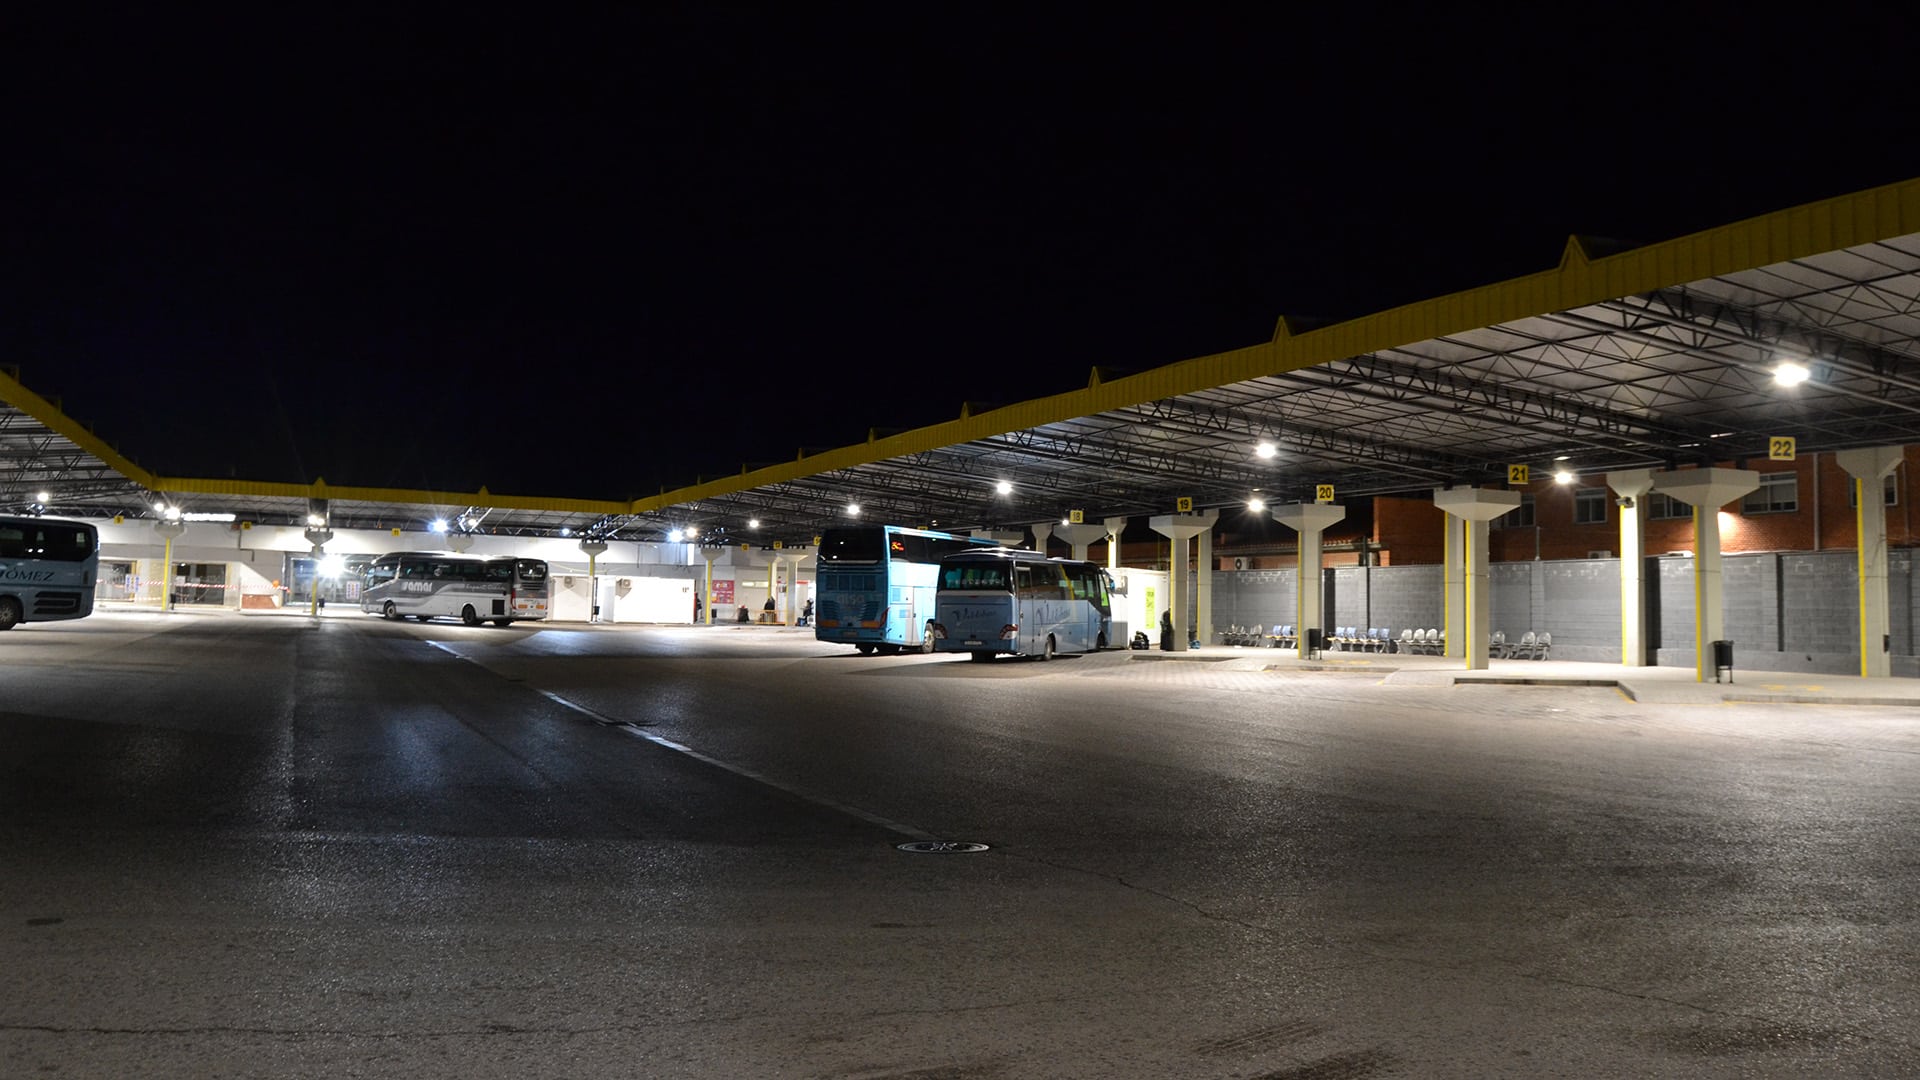 Estación de Autobuses de Albacete. JR Instalaciones Eléctricas & JISO Iluminación